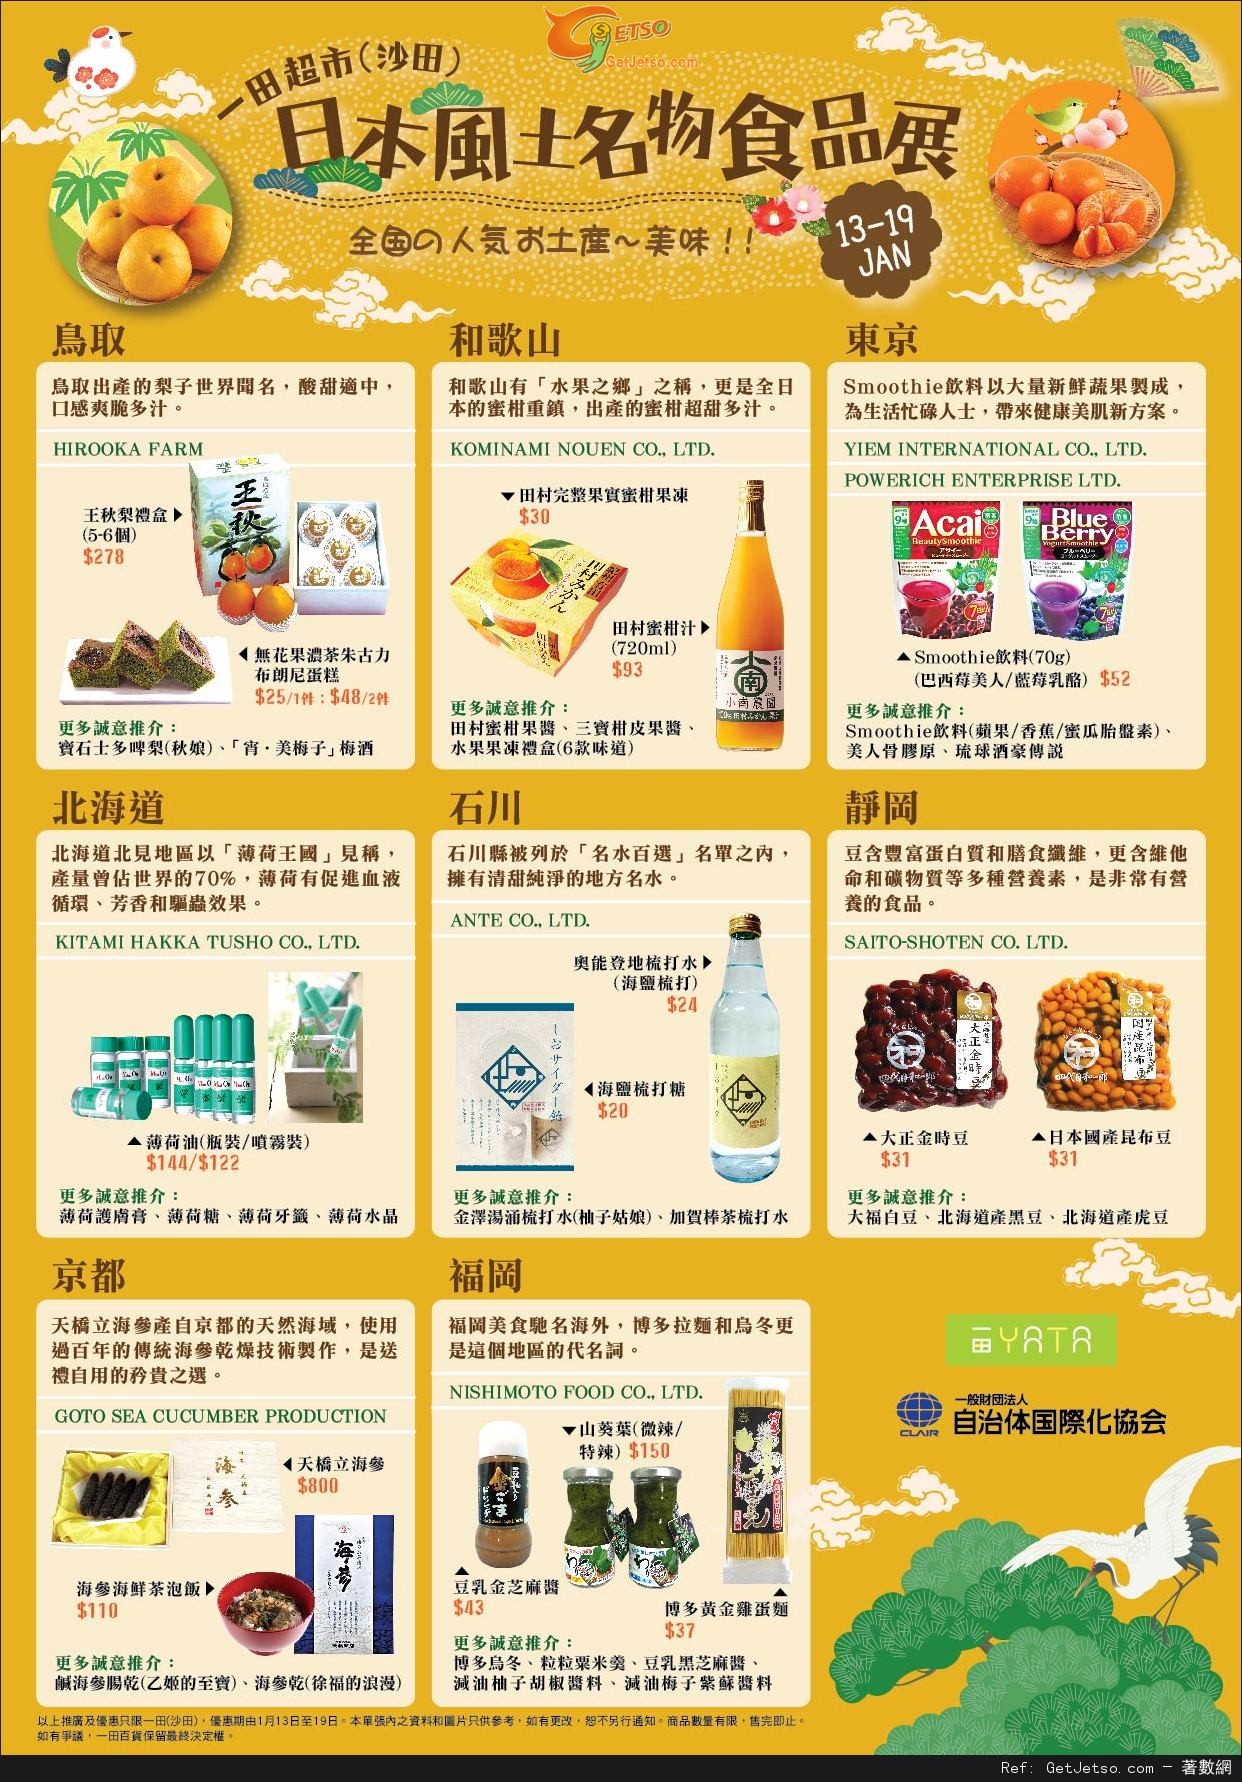 一田百貨日本風土名物食品展購物優惠(至15年1月17日)圖片1